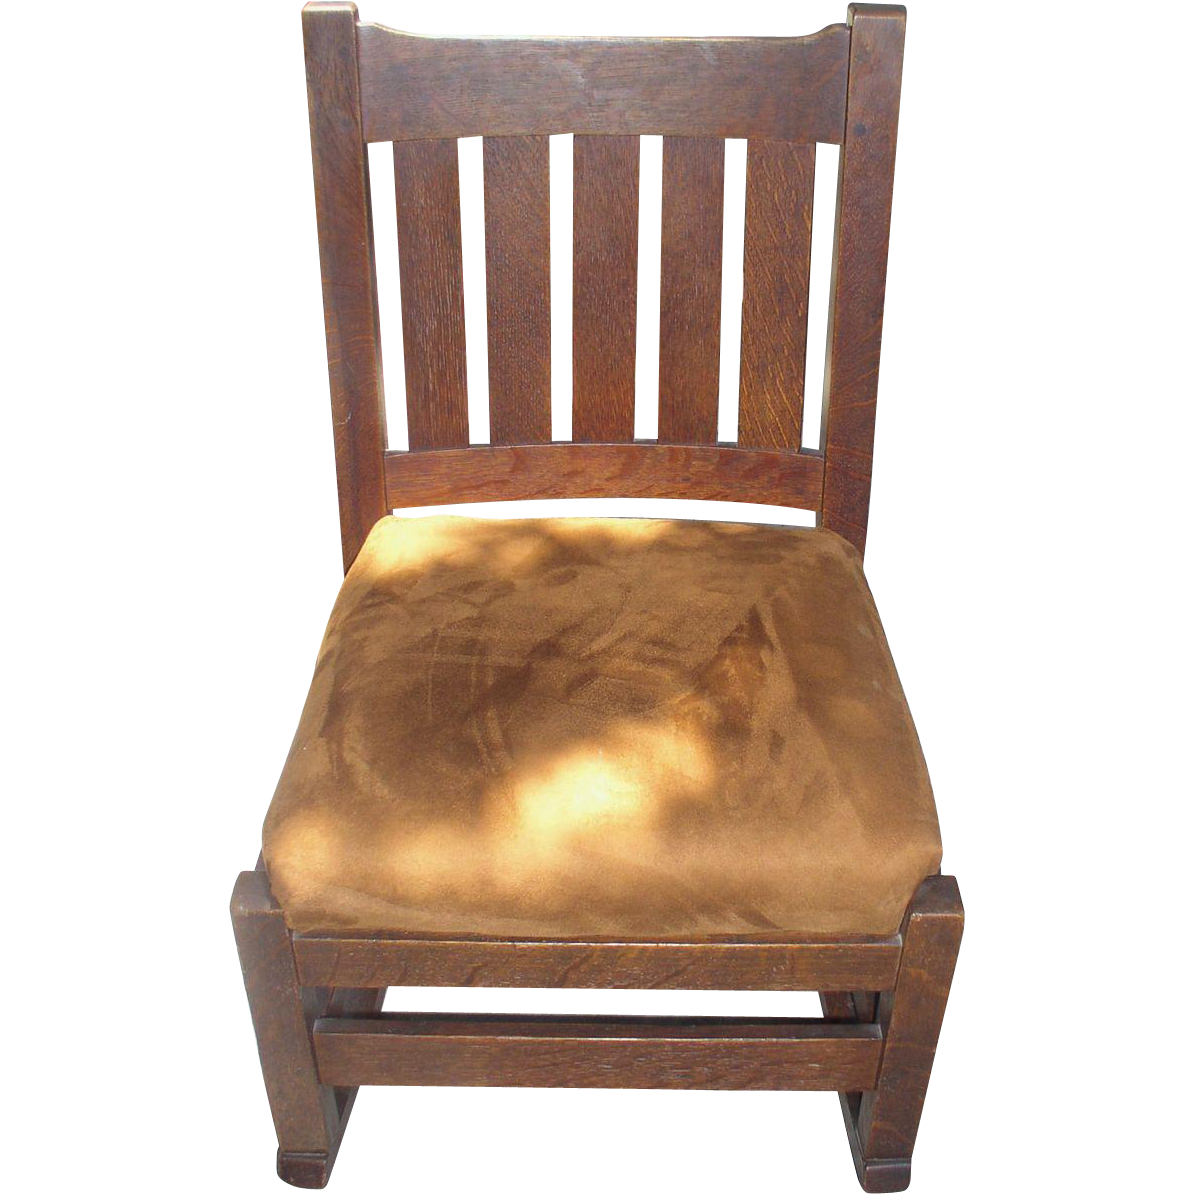 stickley rocking chair